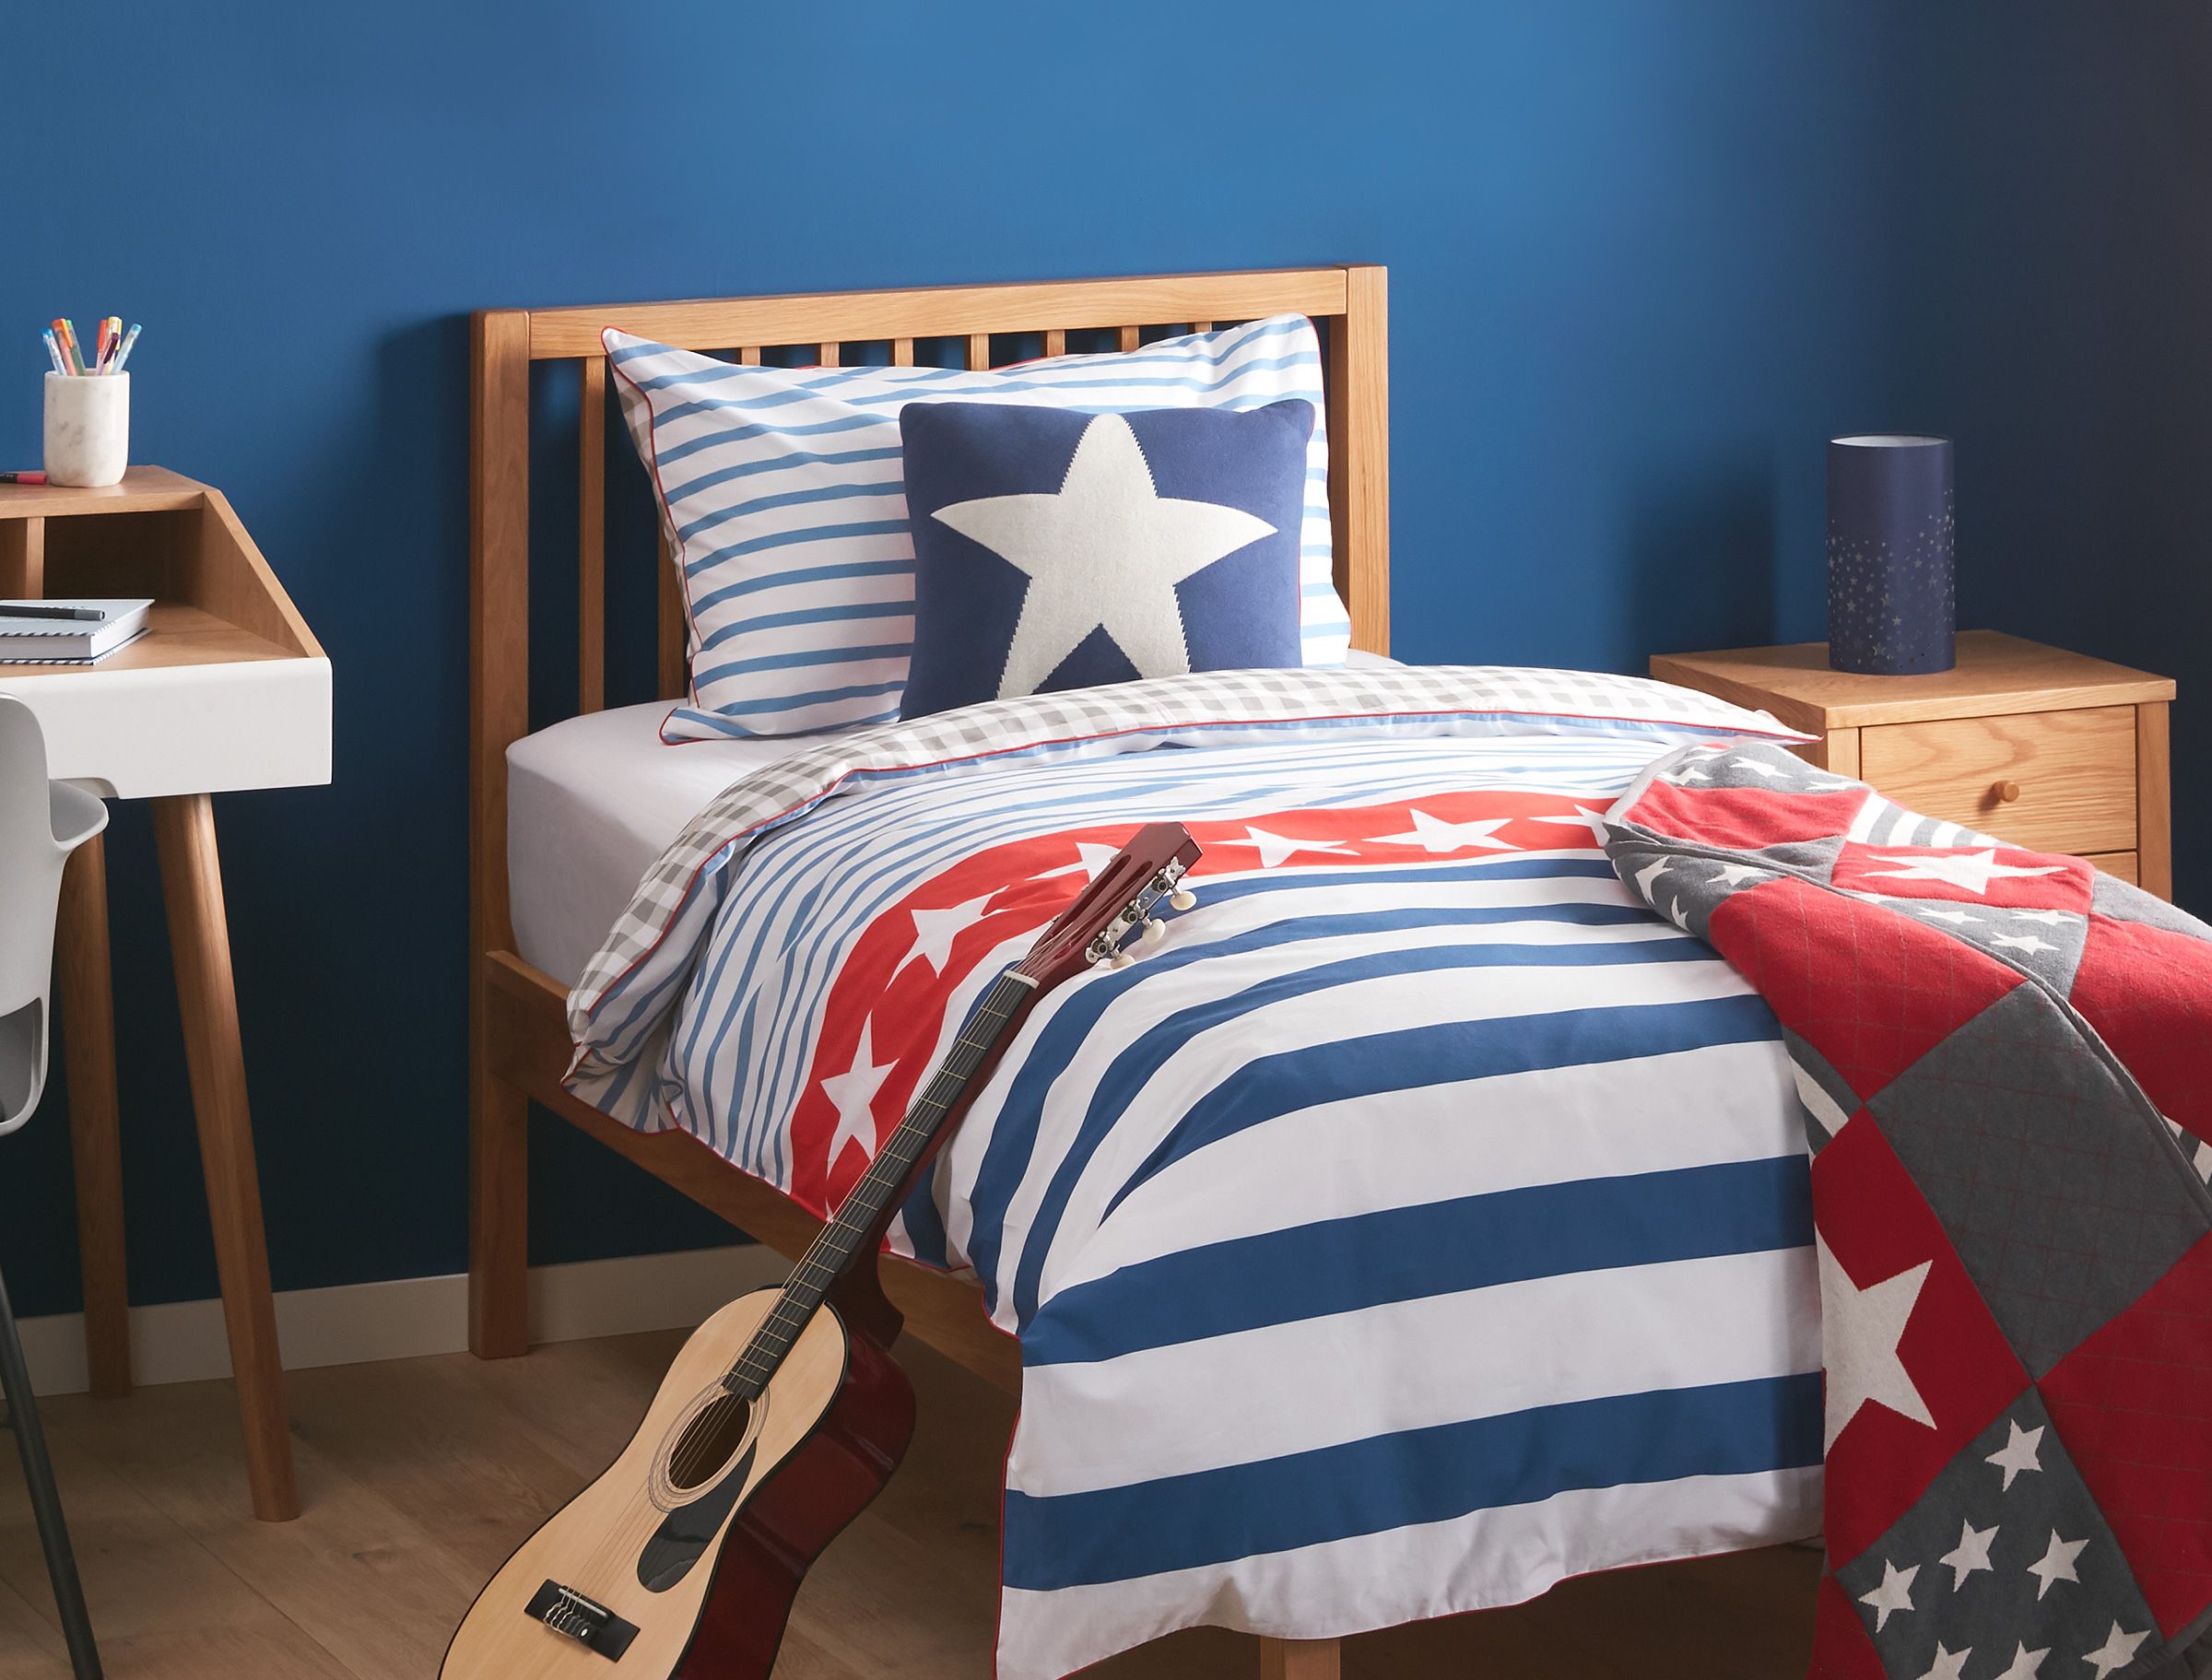 Children's bedroom ideas John Lewis & Partners